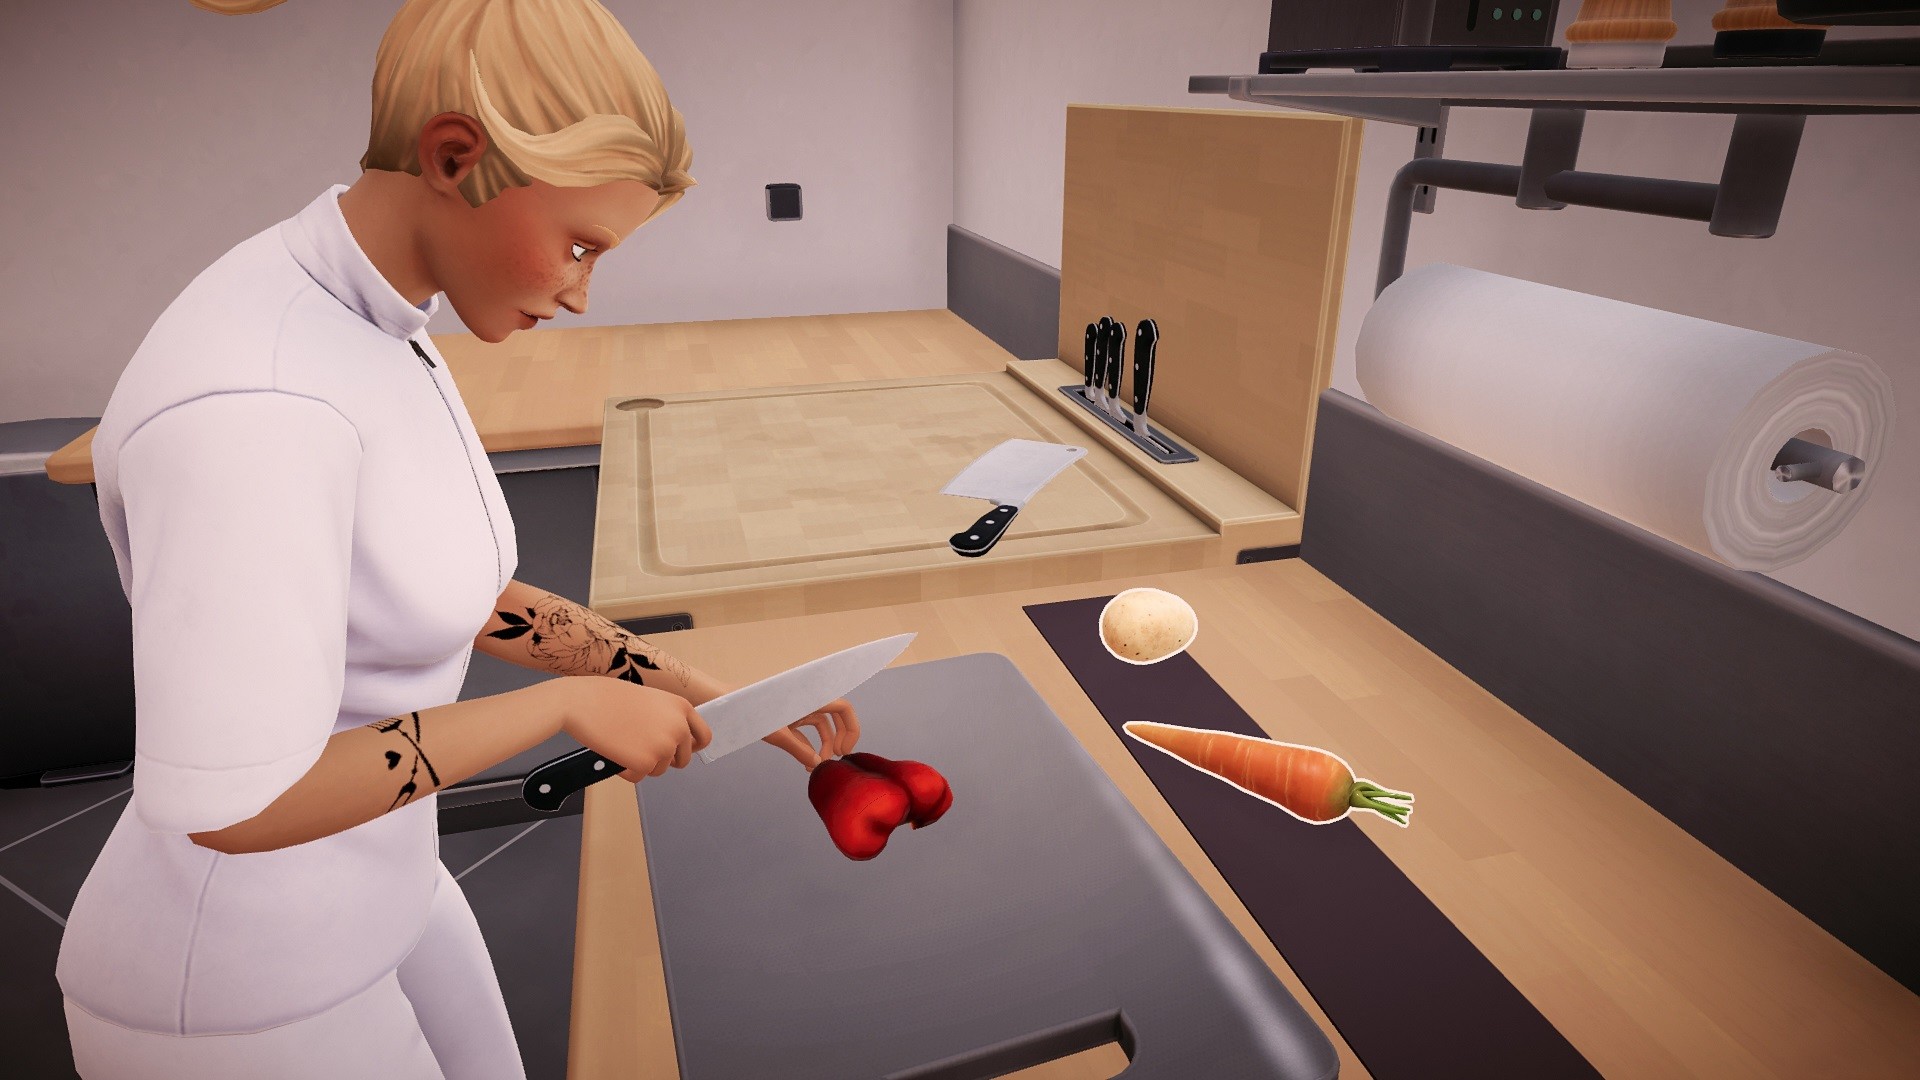 Chef Life: A Restaurant Simulator EU Steam CD Key